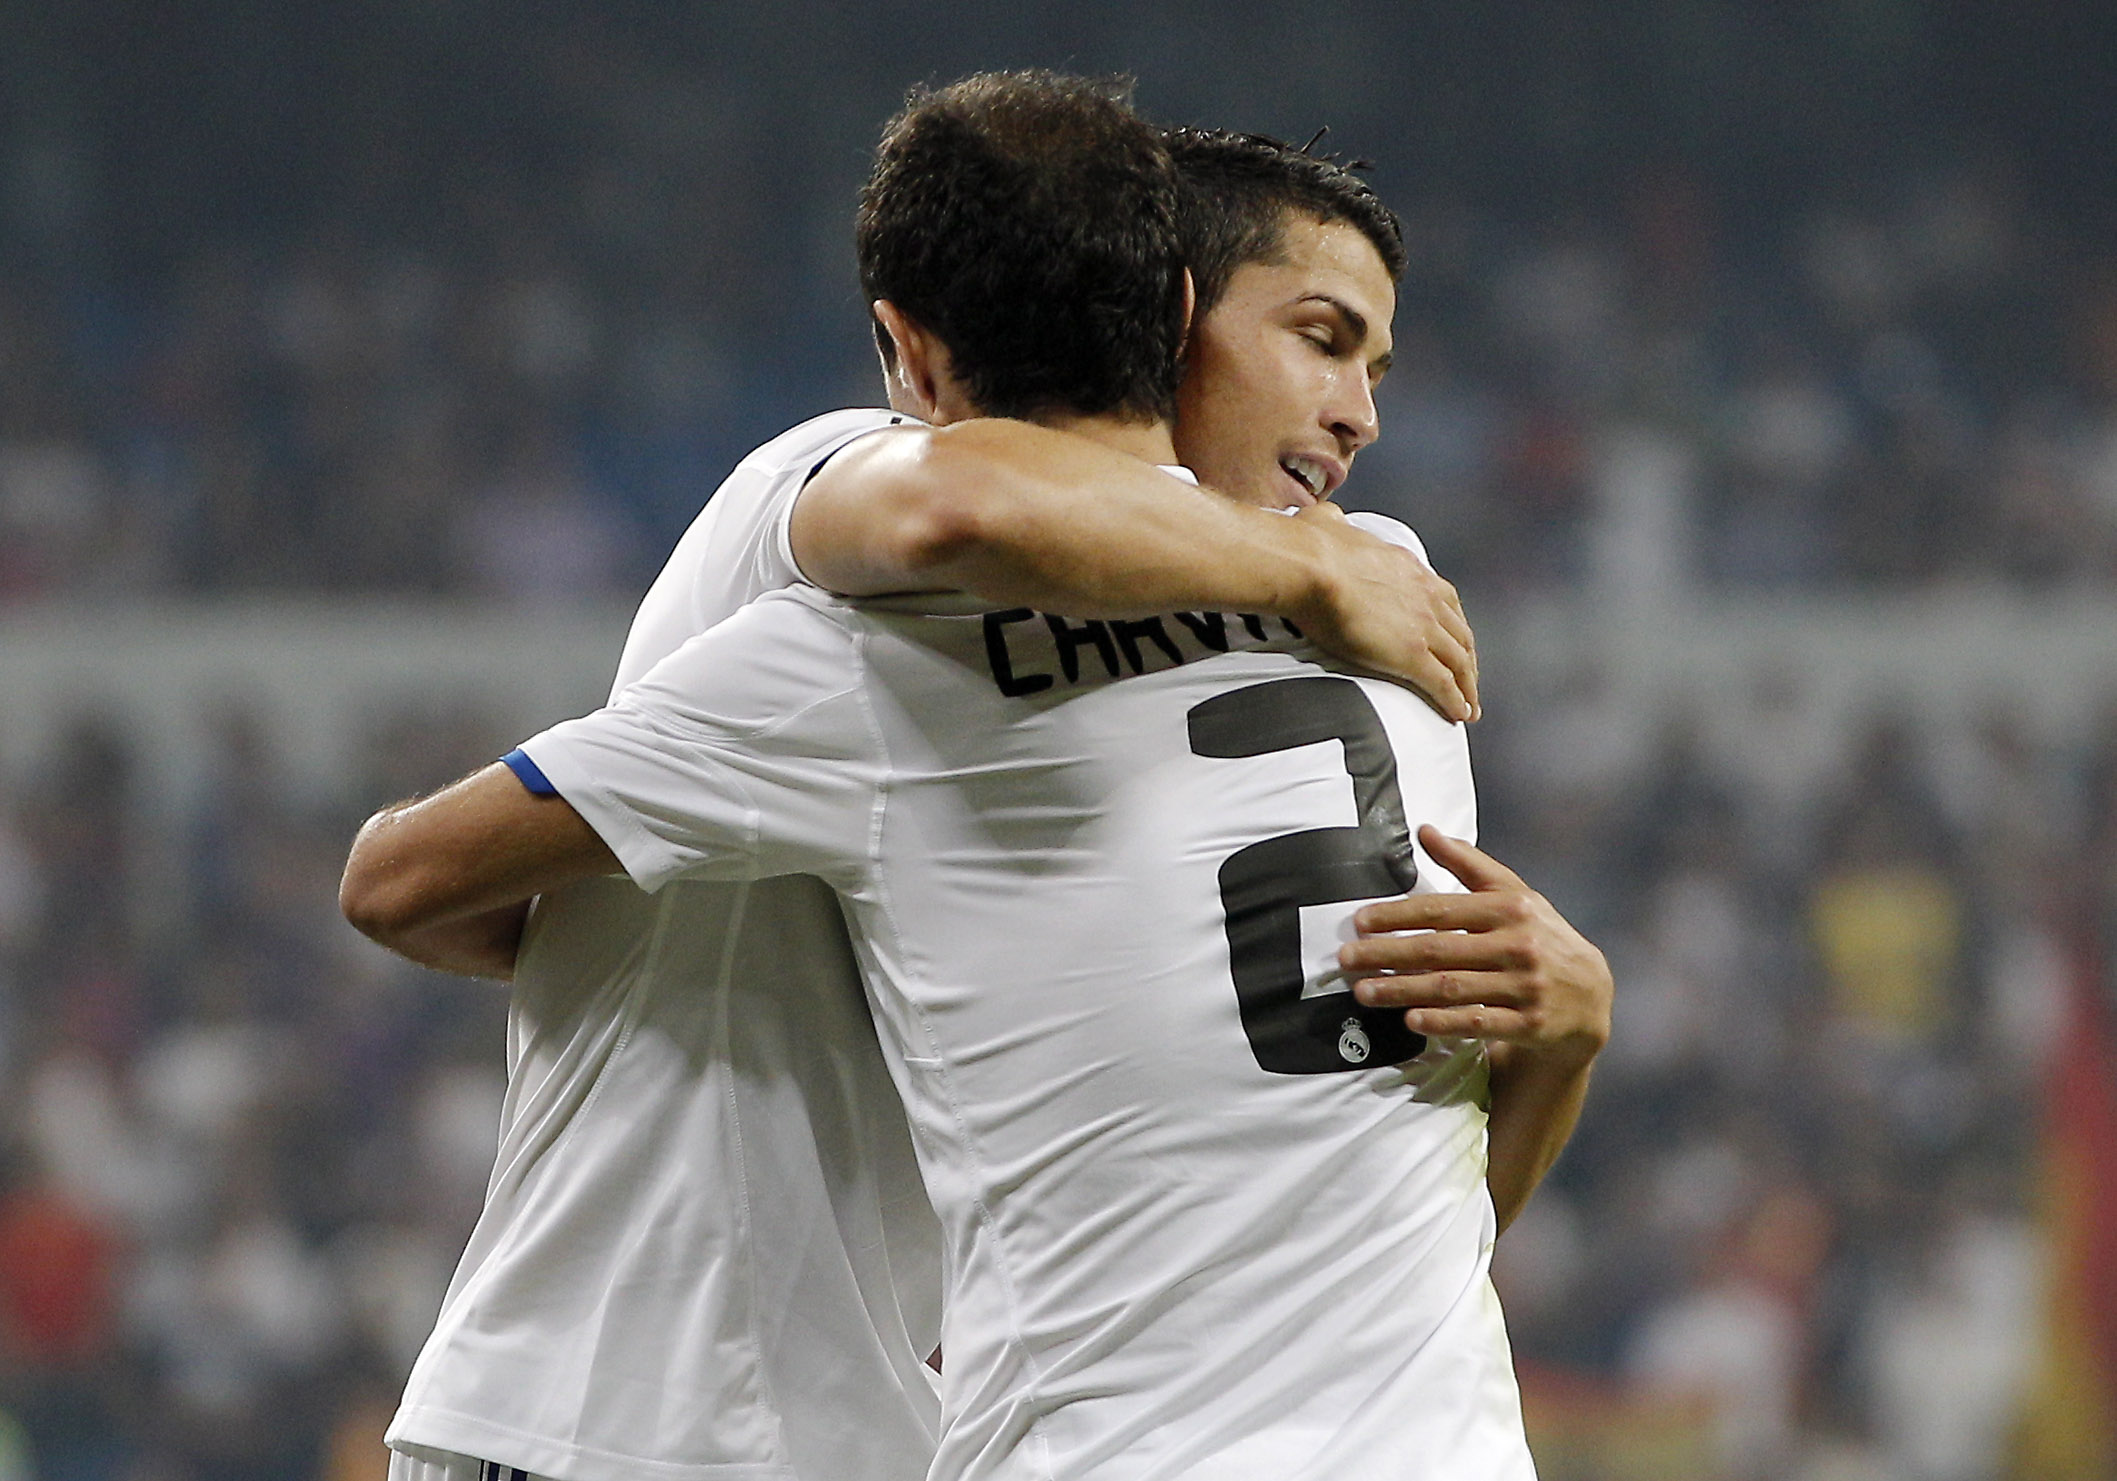 Cristiano Ronaldo kramar om sin landsman Ricardo Carvalho efter att denne gjort segermålet mot Osasuna.